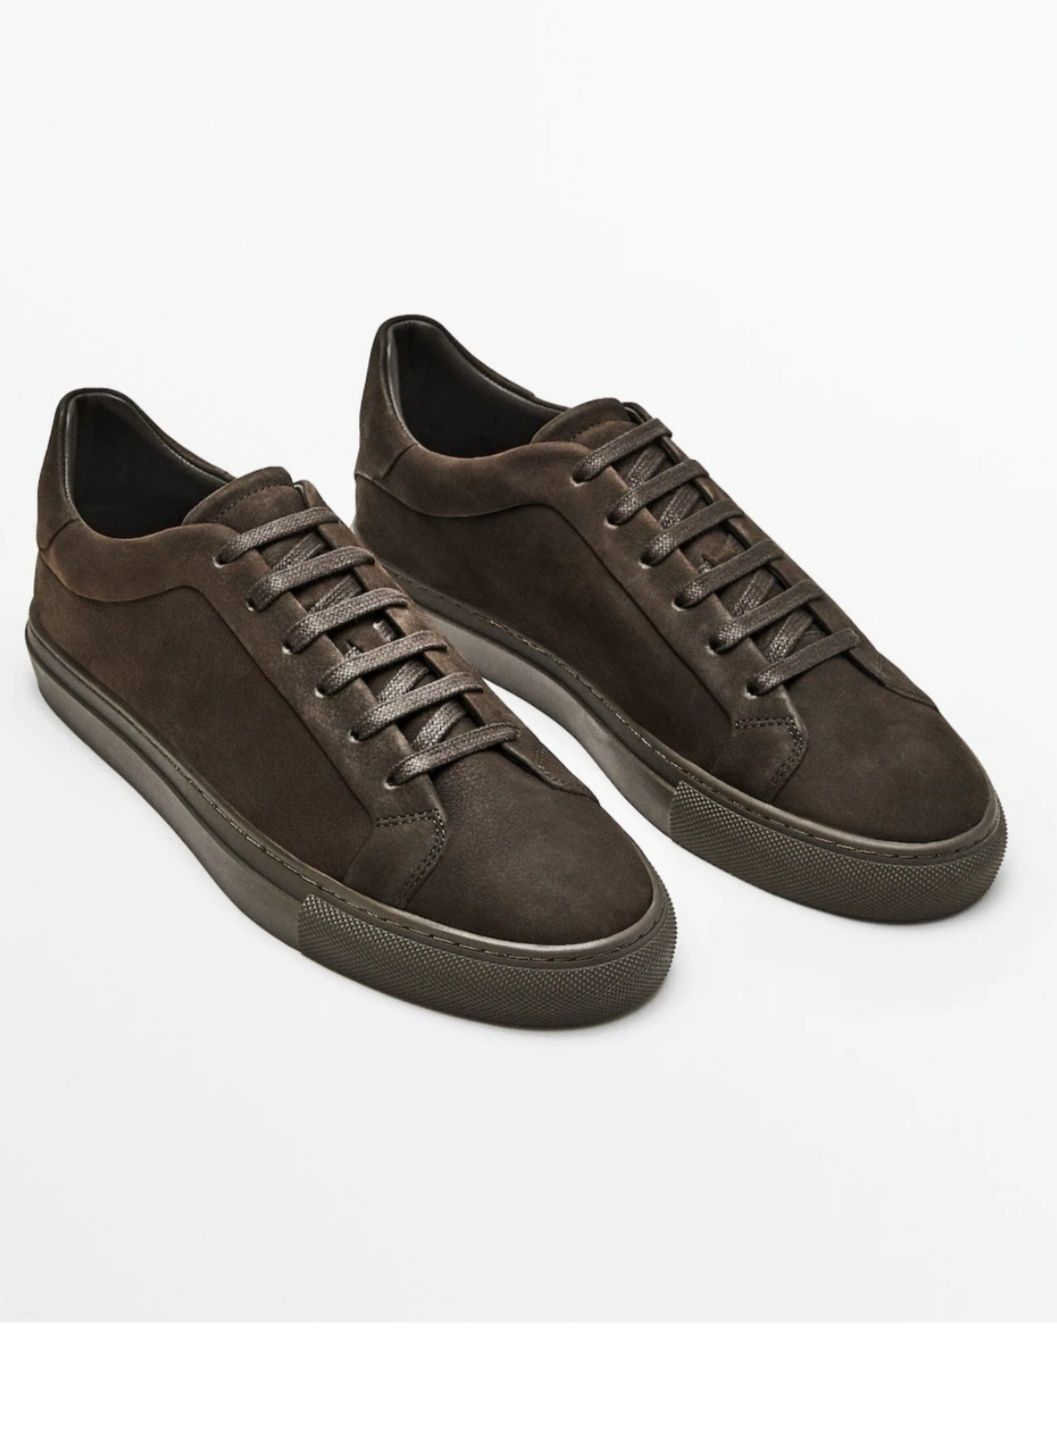 Кожаные кроссовки/мокасины Massimo Dutti, 30 см стелька